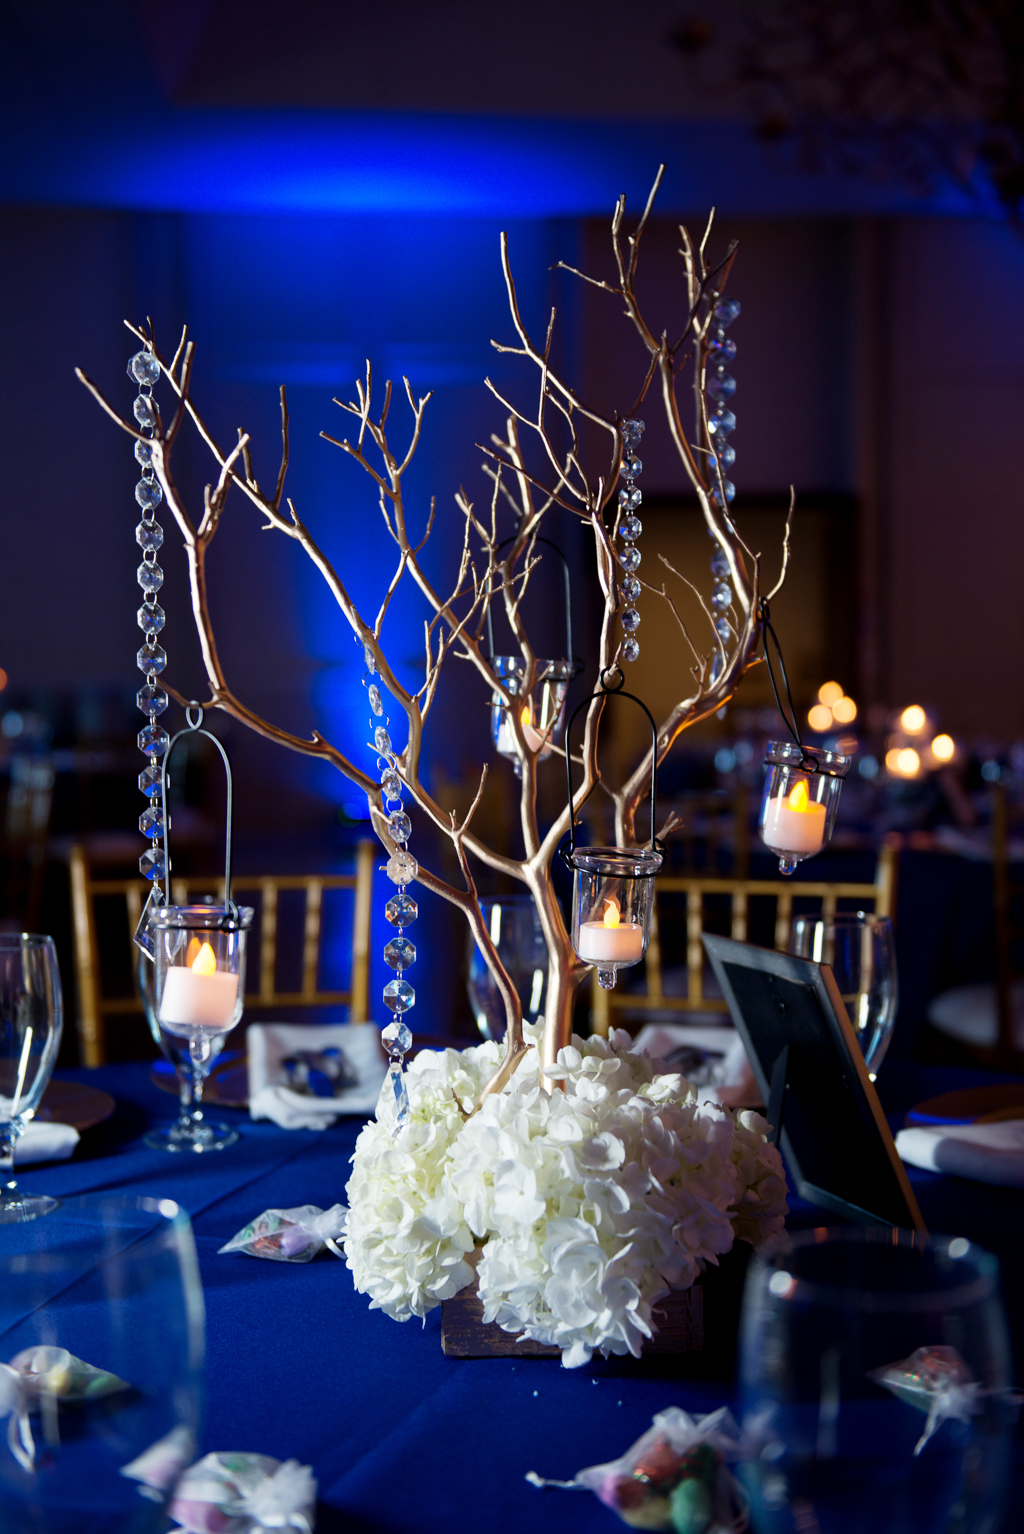 dark blue and white hydrangeas decorate wedding reception with dark blue uplighting in background